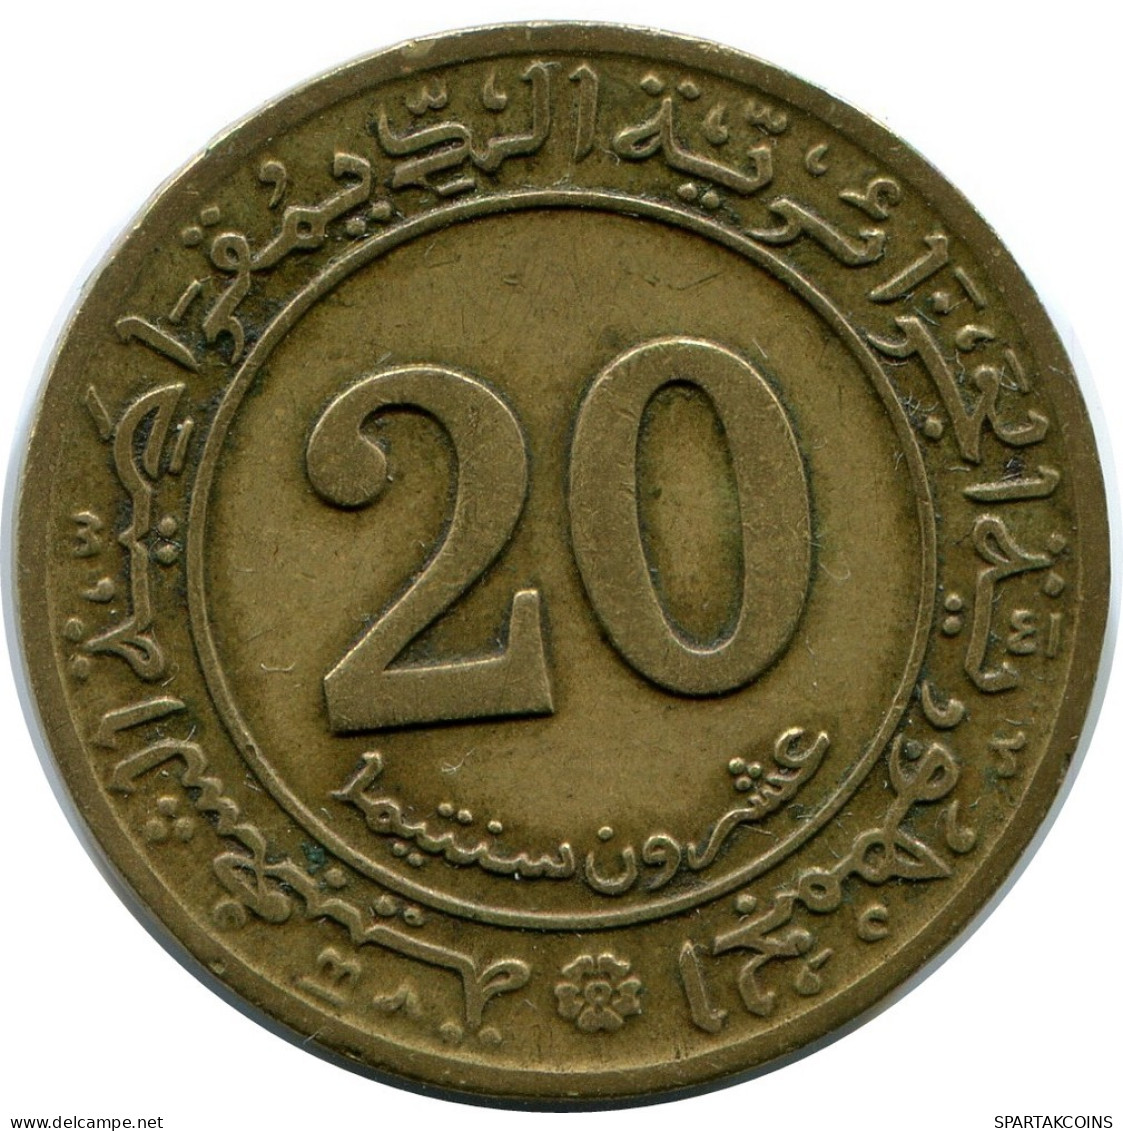 20 CENTIMES 1972 ALGERIEN ALGERIA Münze #AP971.D.A - Algerien